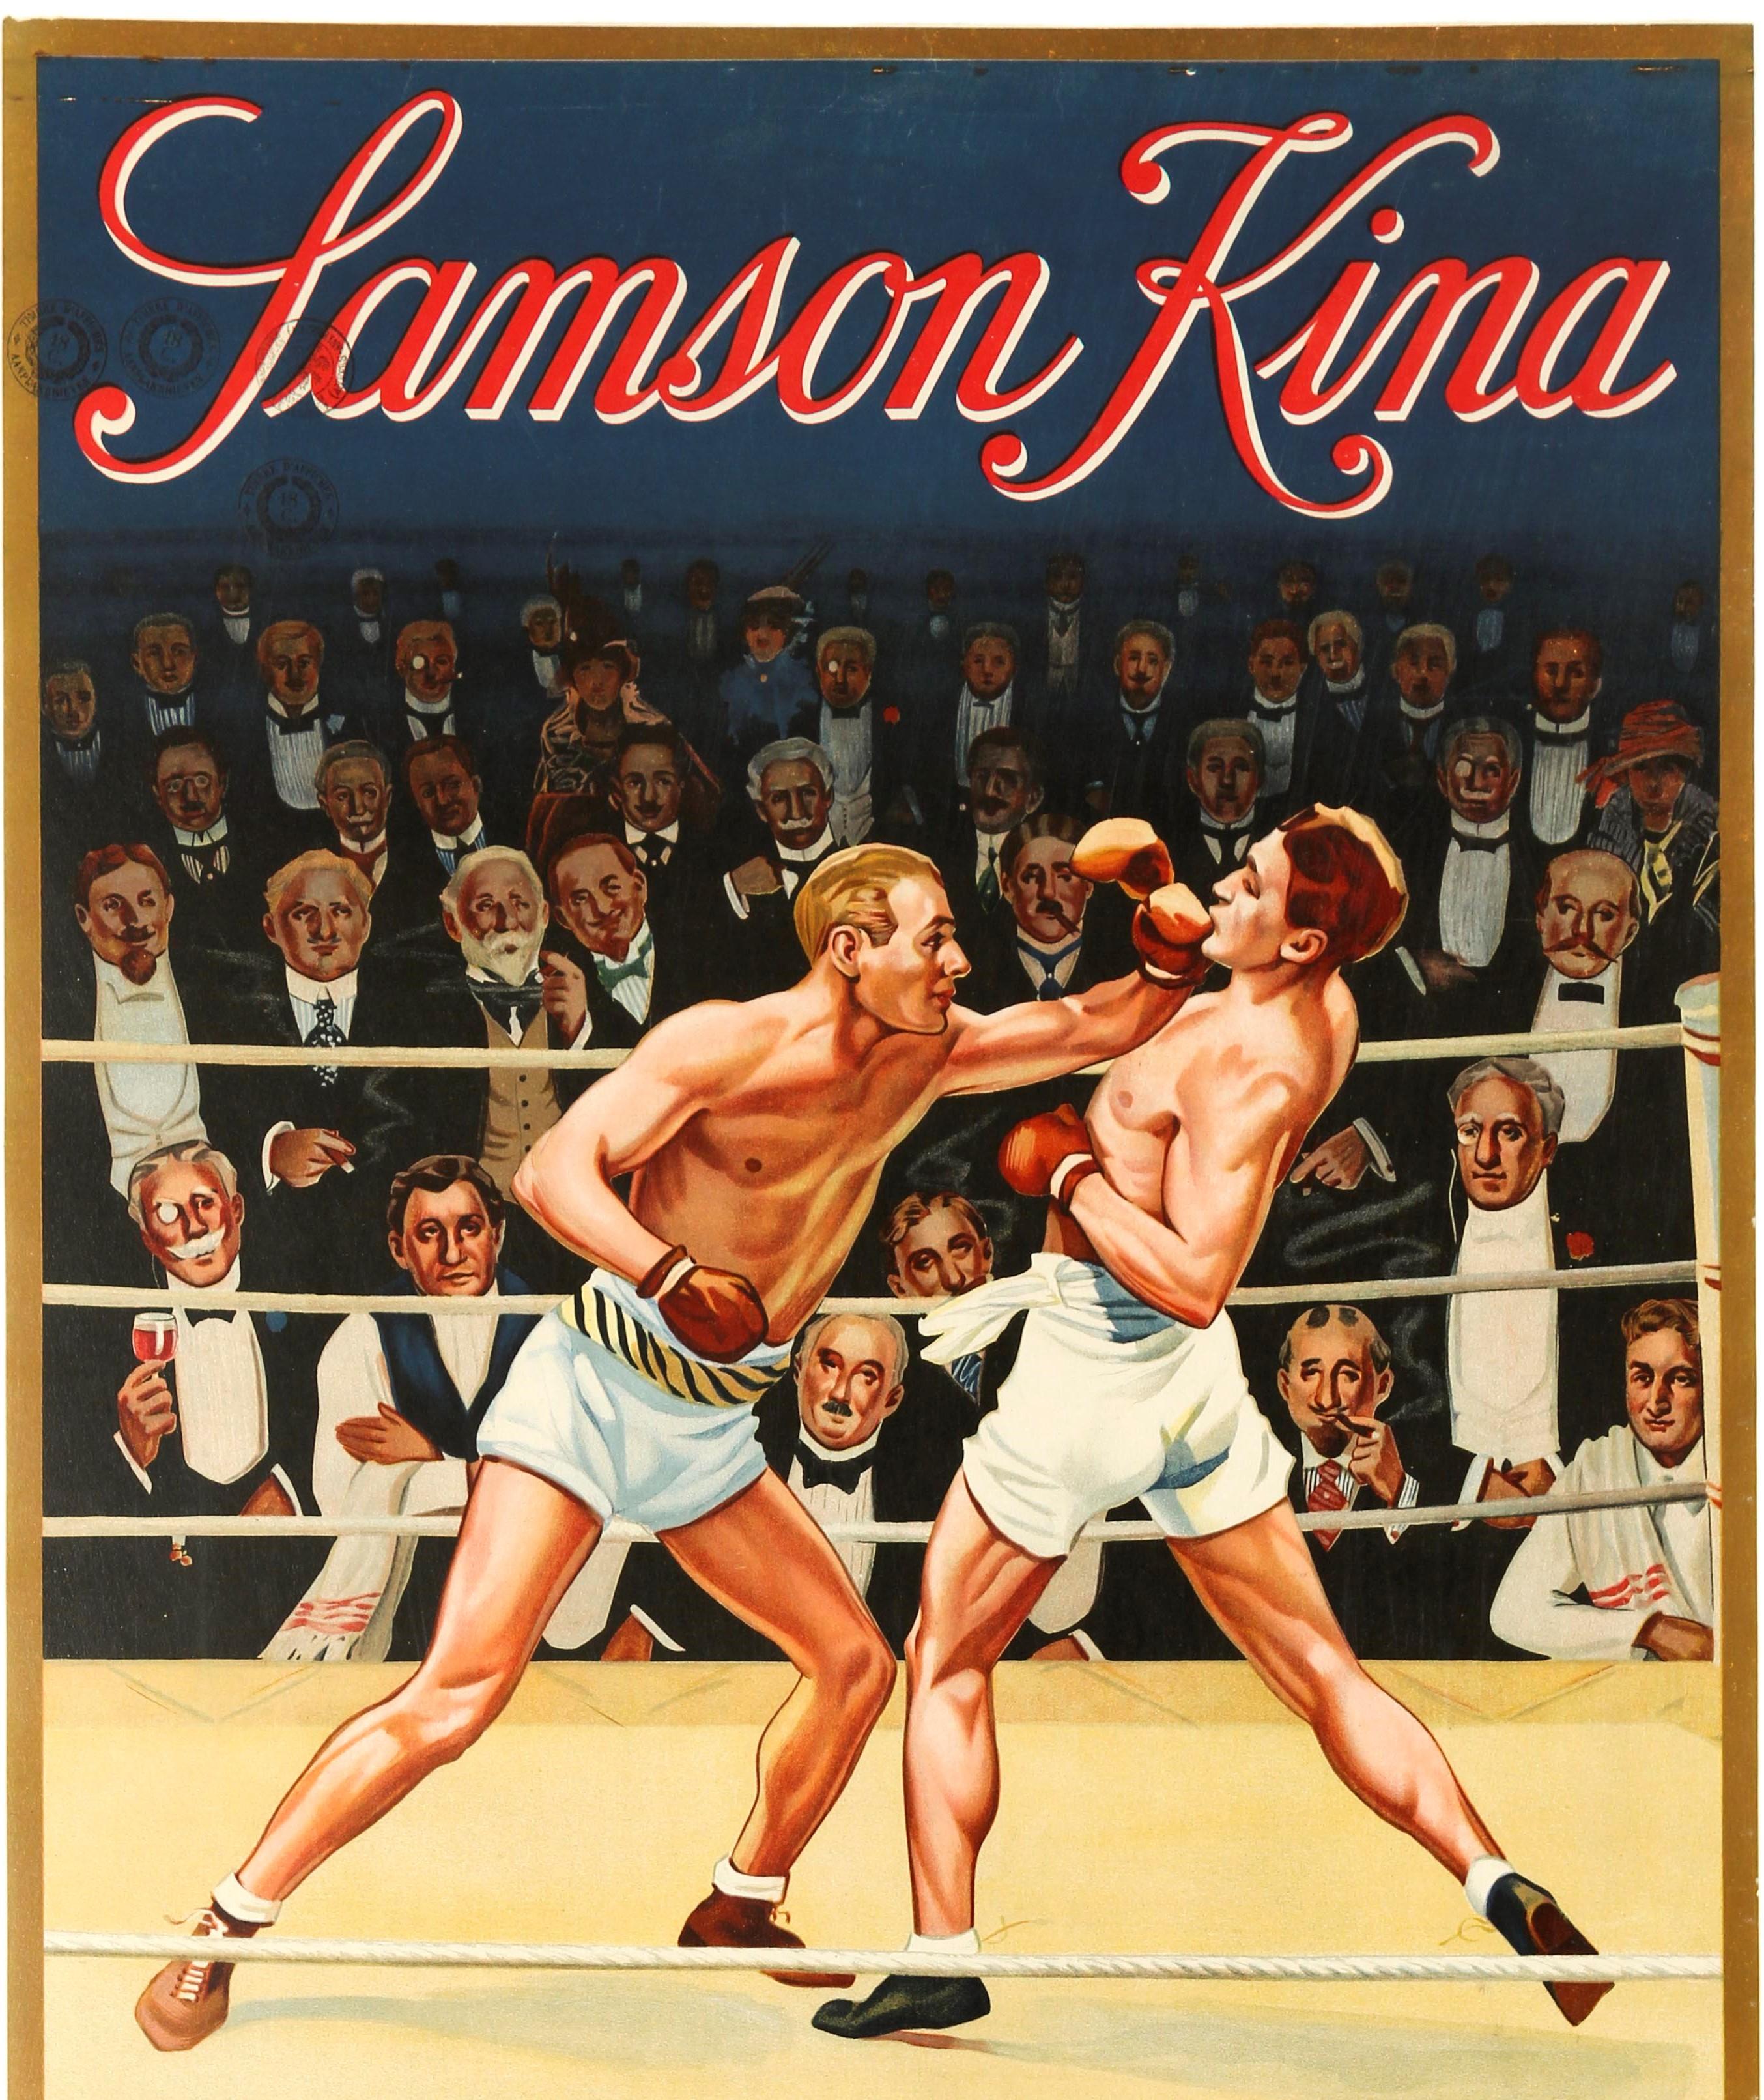 Original-Getränke-Werbeplakat für den belgischen Aperitif Samson Kina mit einem farbenfrohen Kunstwerk, das einen überfüllten Boxkampf mit zwei Männern im Ring und elegant gekleideten Zuschauern zeigt, die den Kampf auf beiden Seiten beobachten,